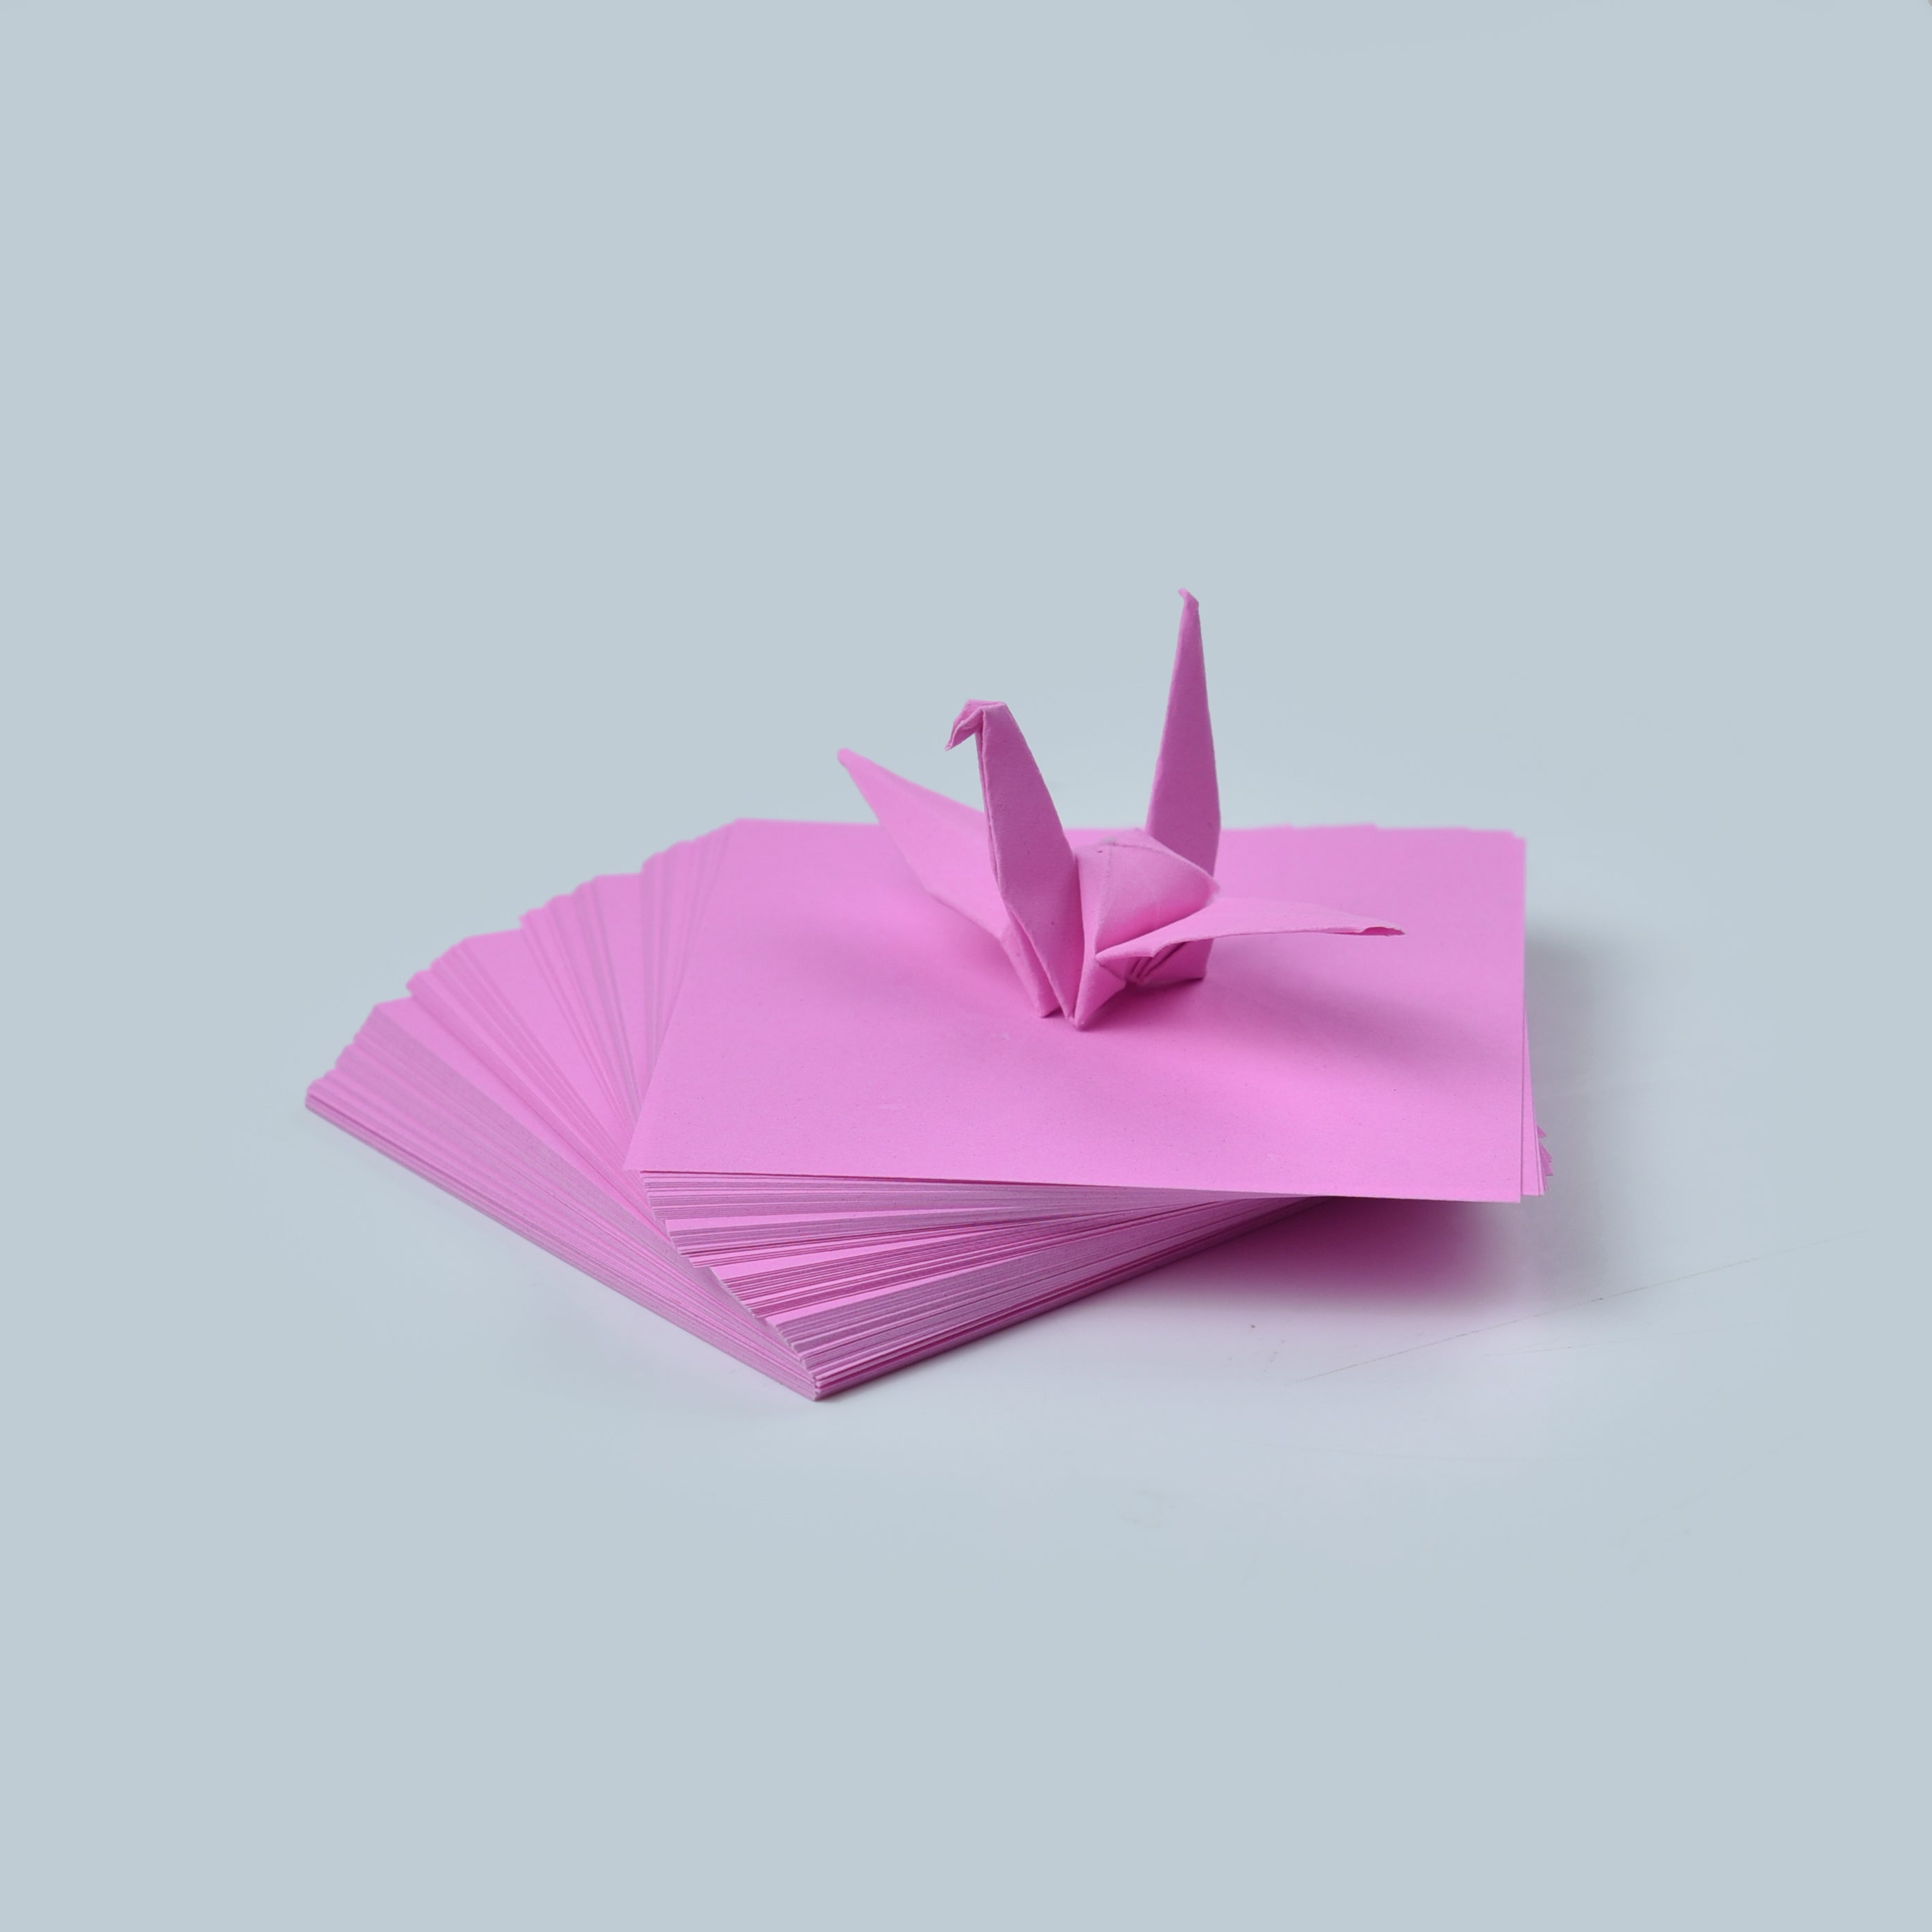 100 Hojas de Papel Origami - 3x3 pulgadas - Paquete de Papel Cuadrado para Plegar, Grullas de Origami y Decoración - S13